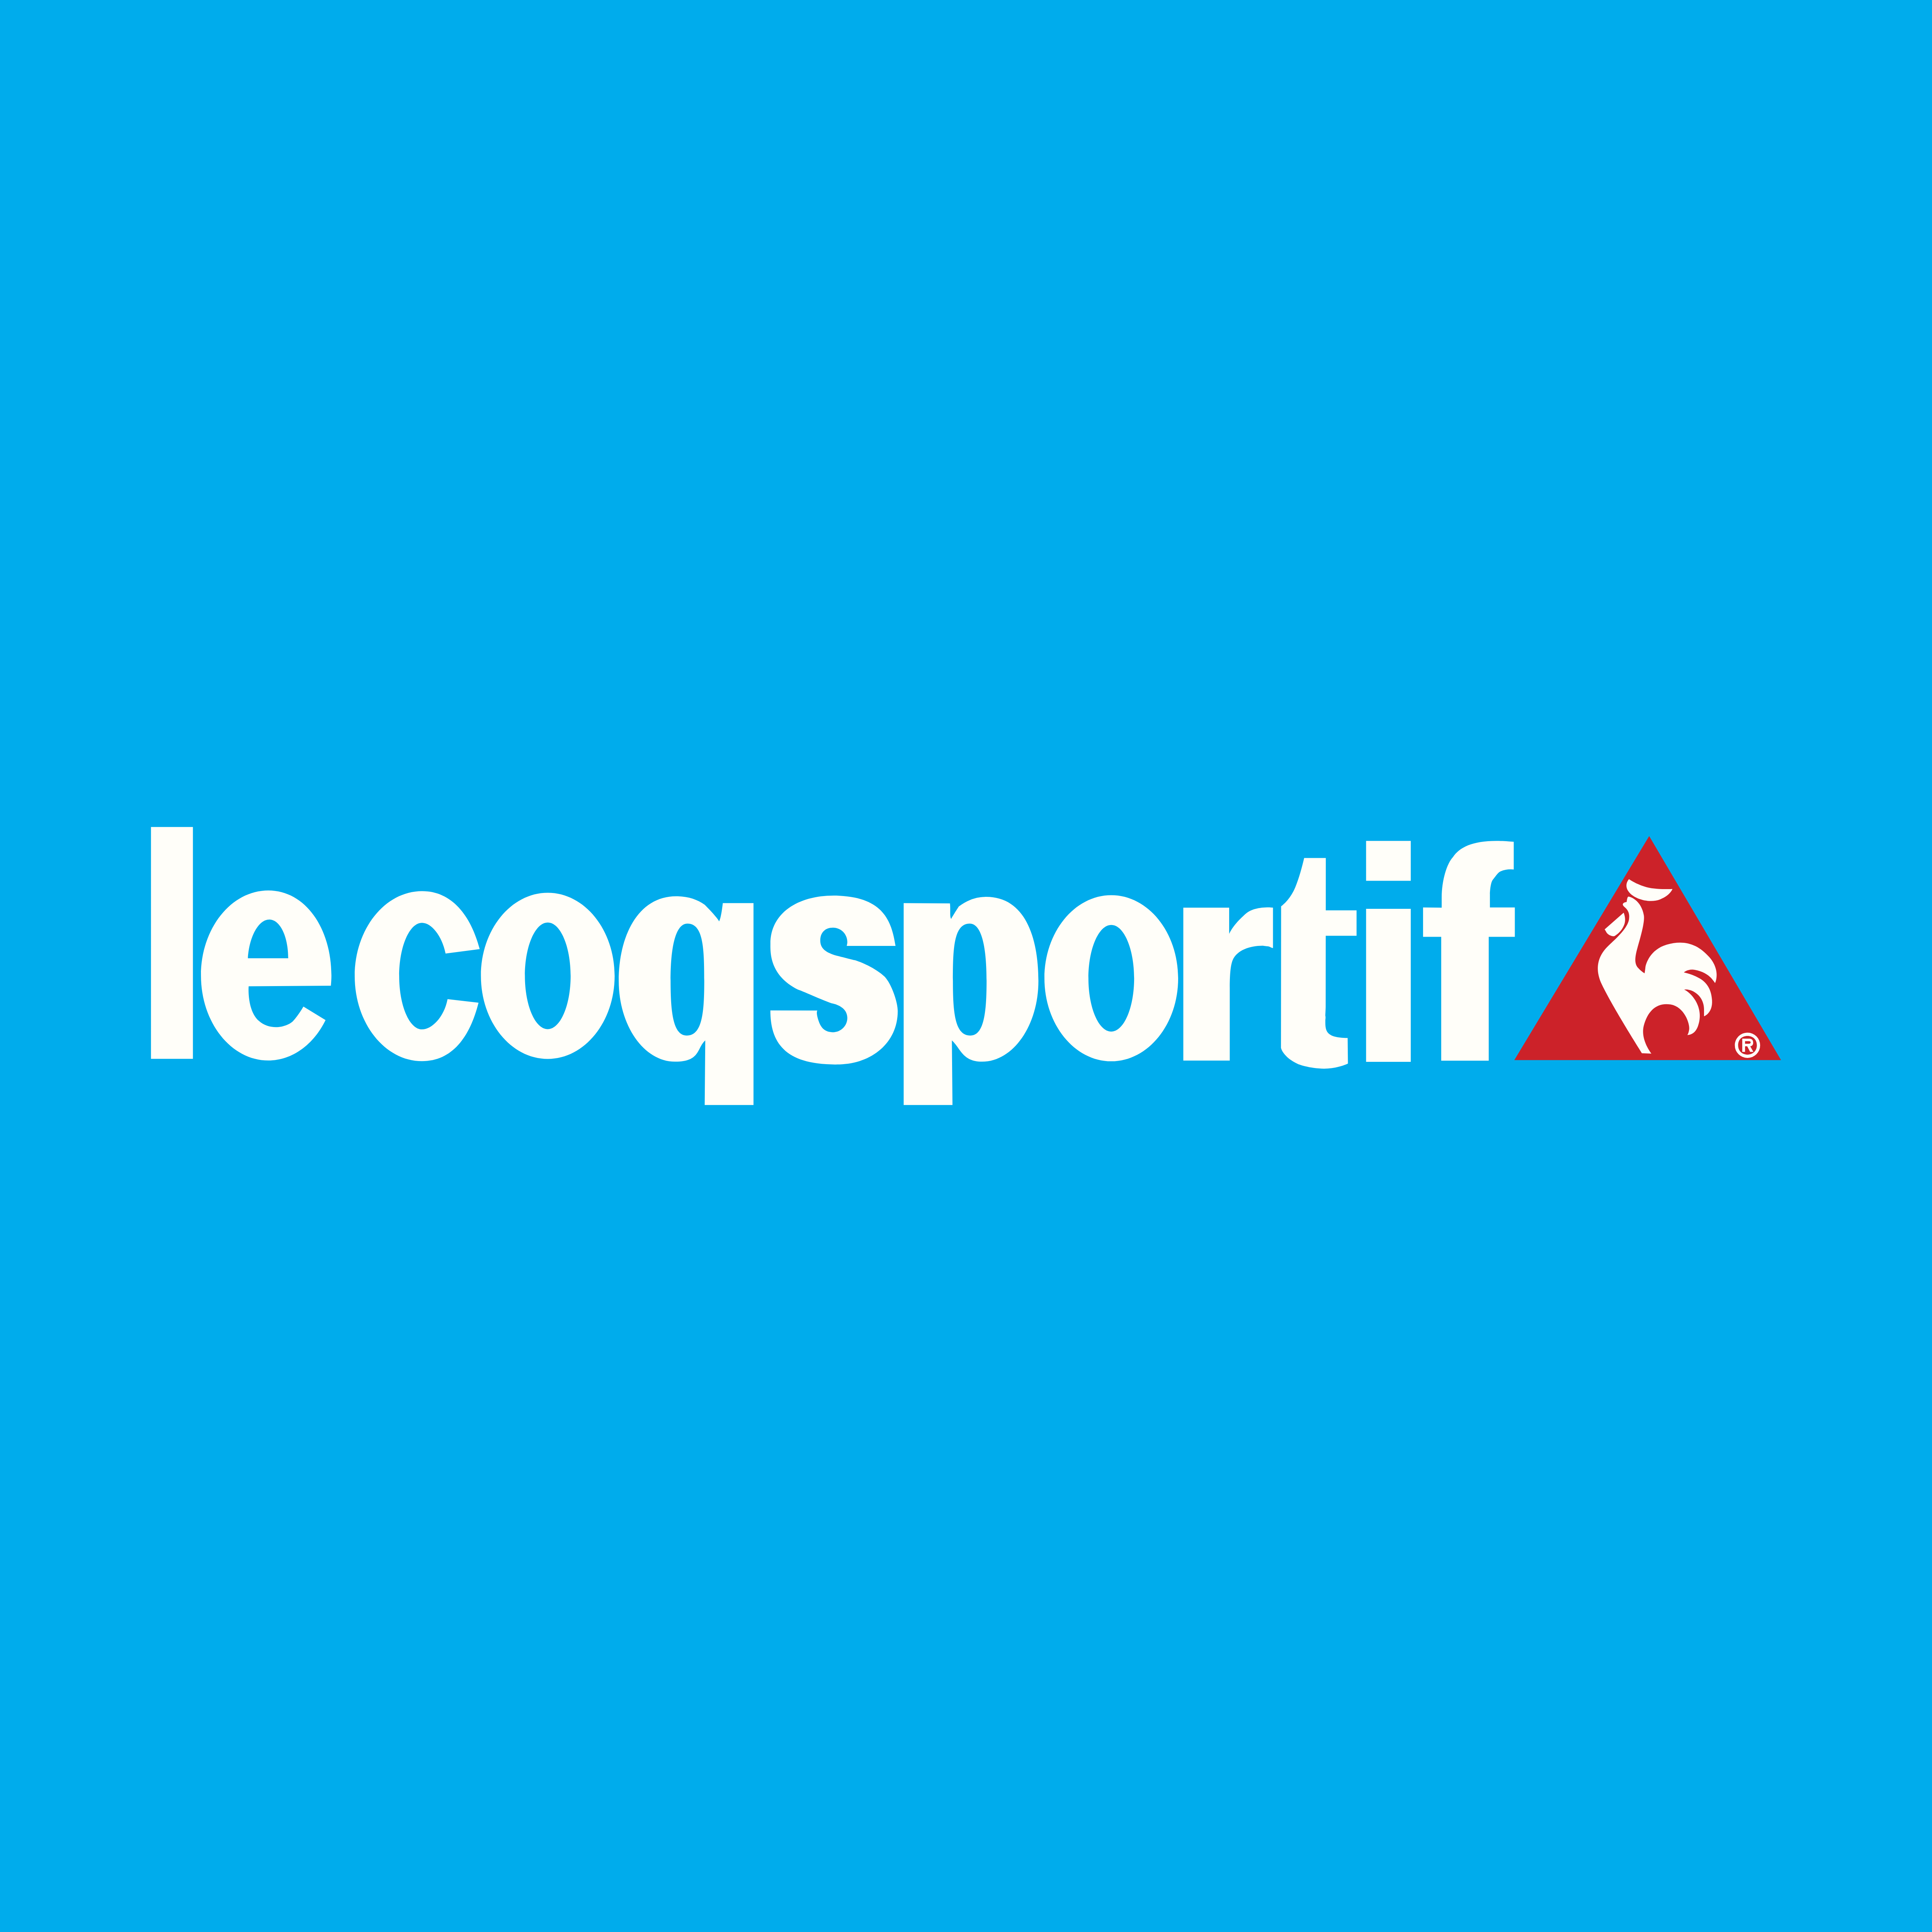 Le Coq Sportif – Logos Download